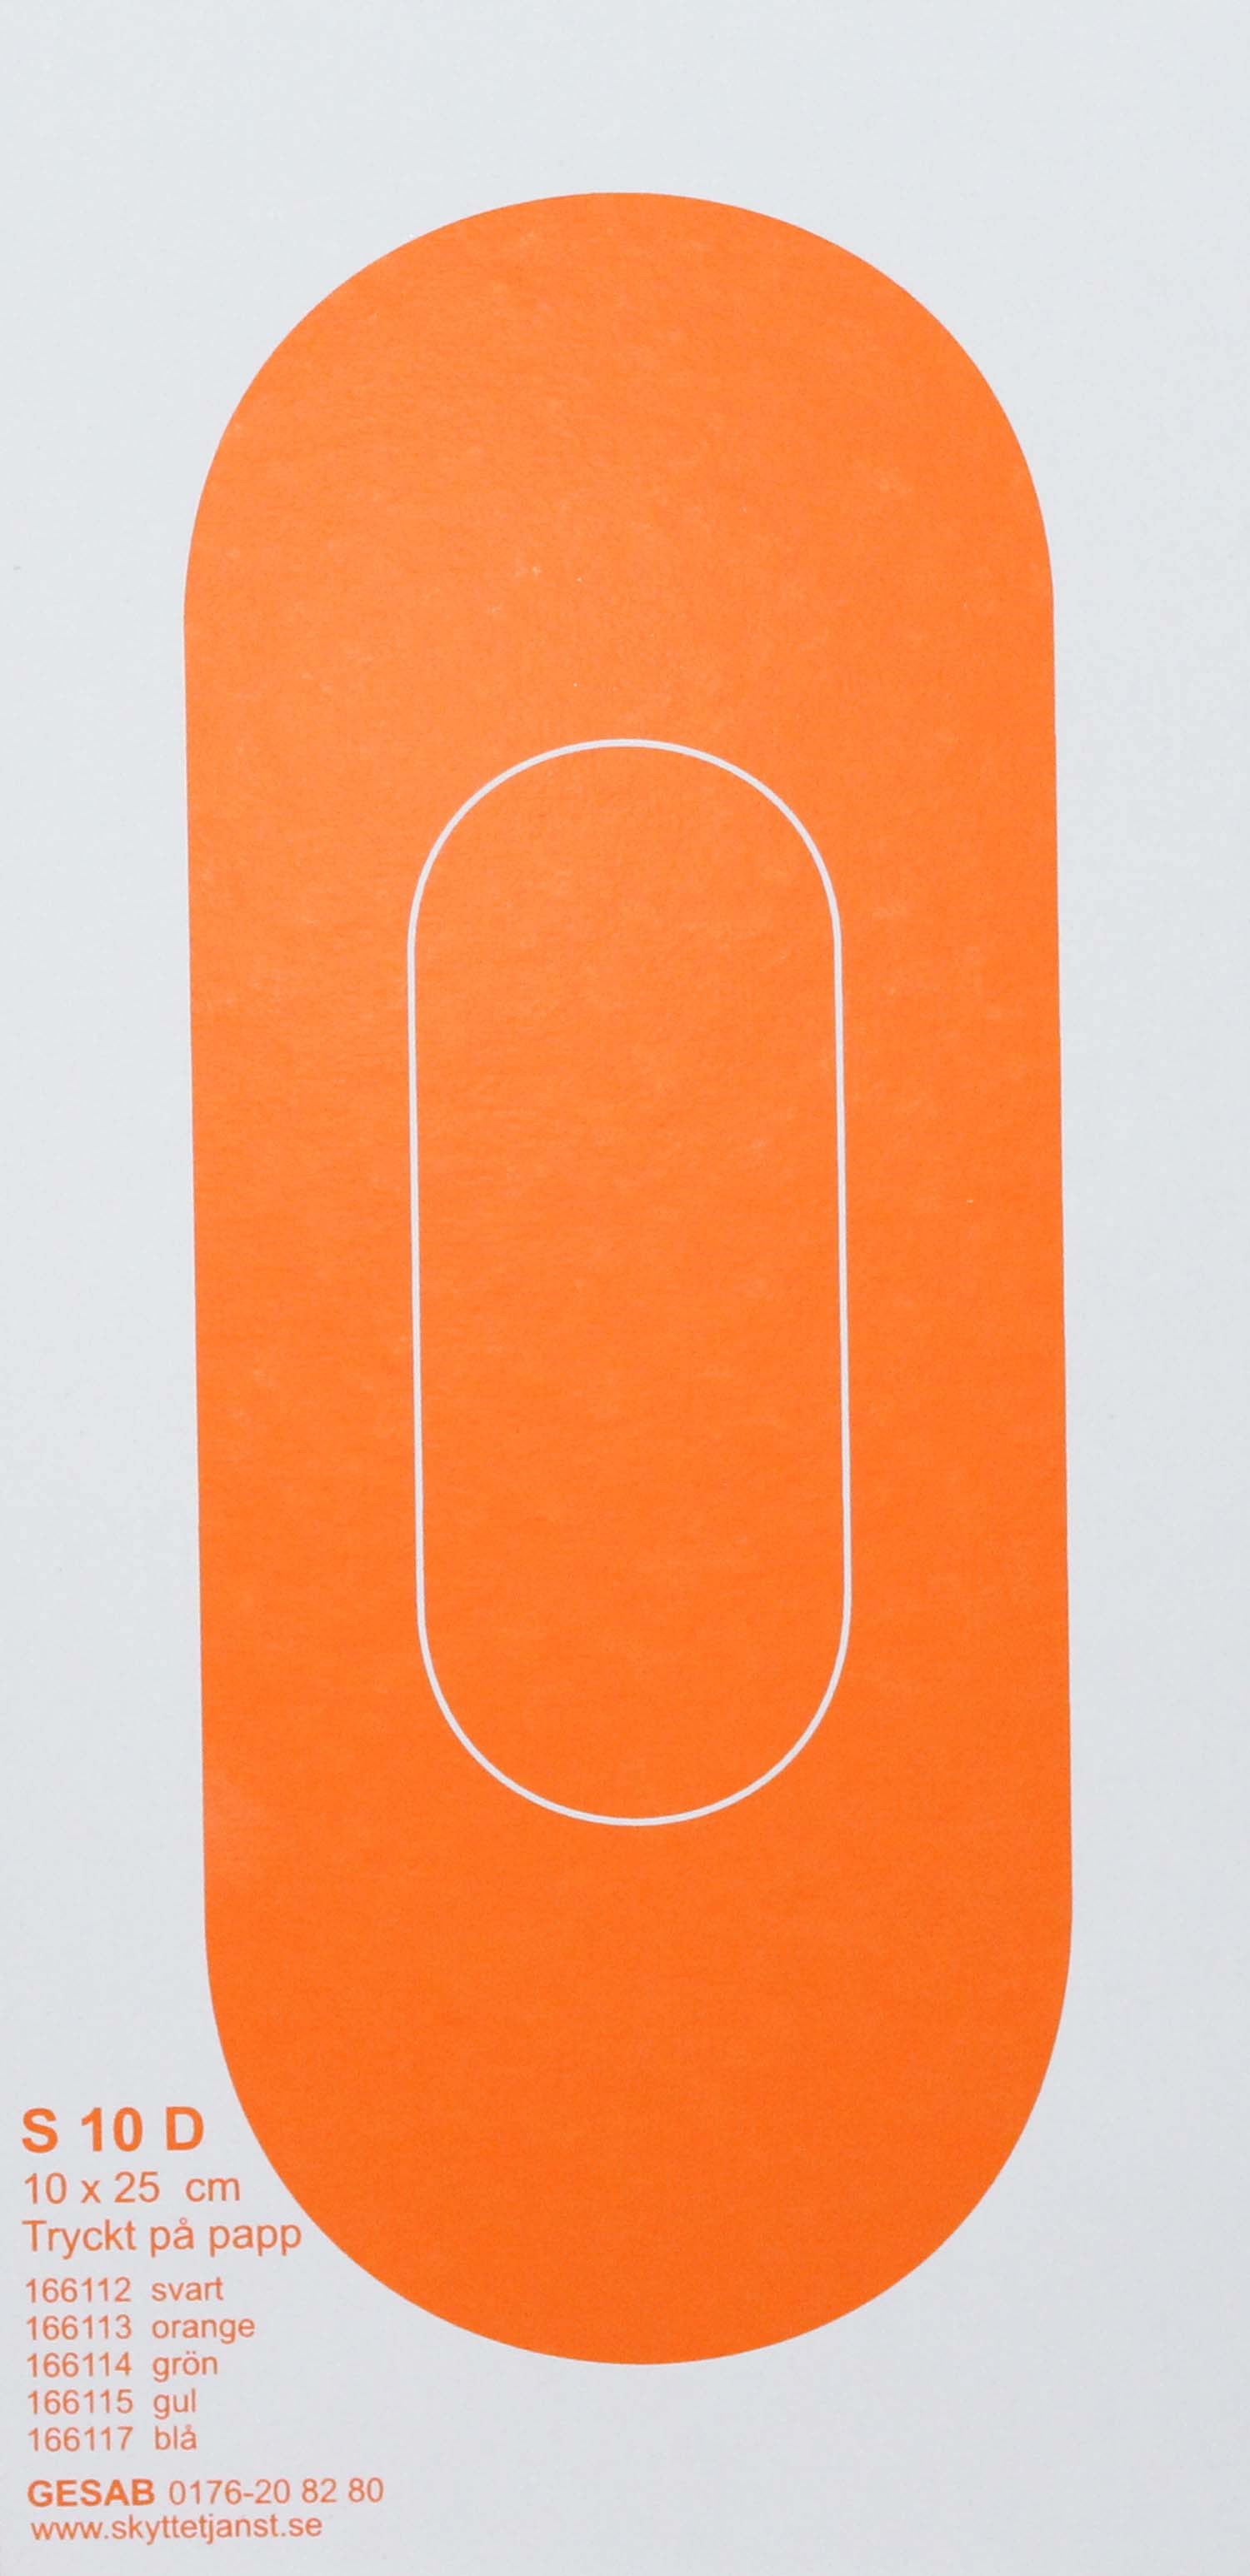 S10 D papp orange